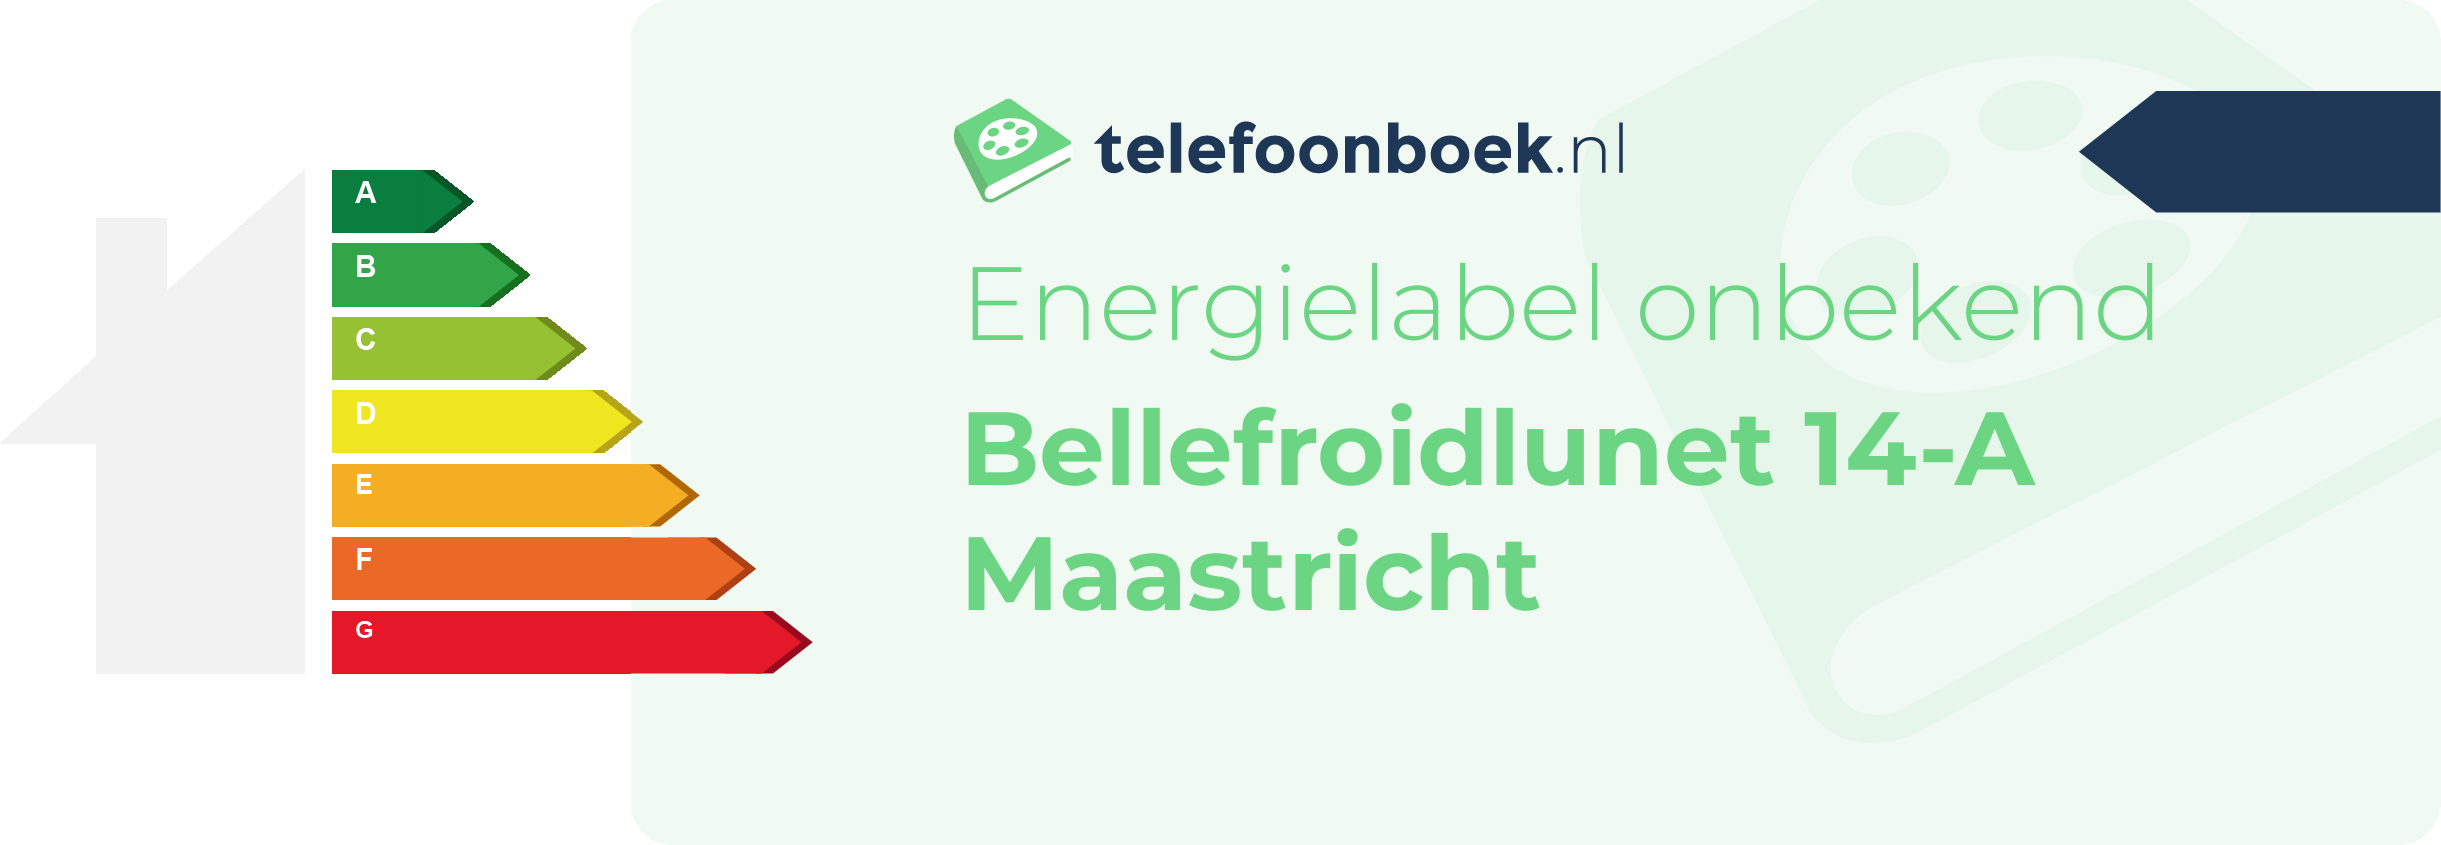 Energielabel Bellefroidlunet 14-A Maastricht